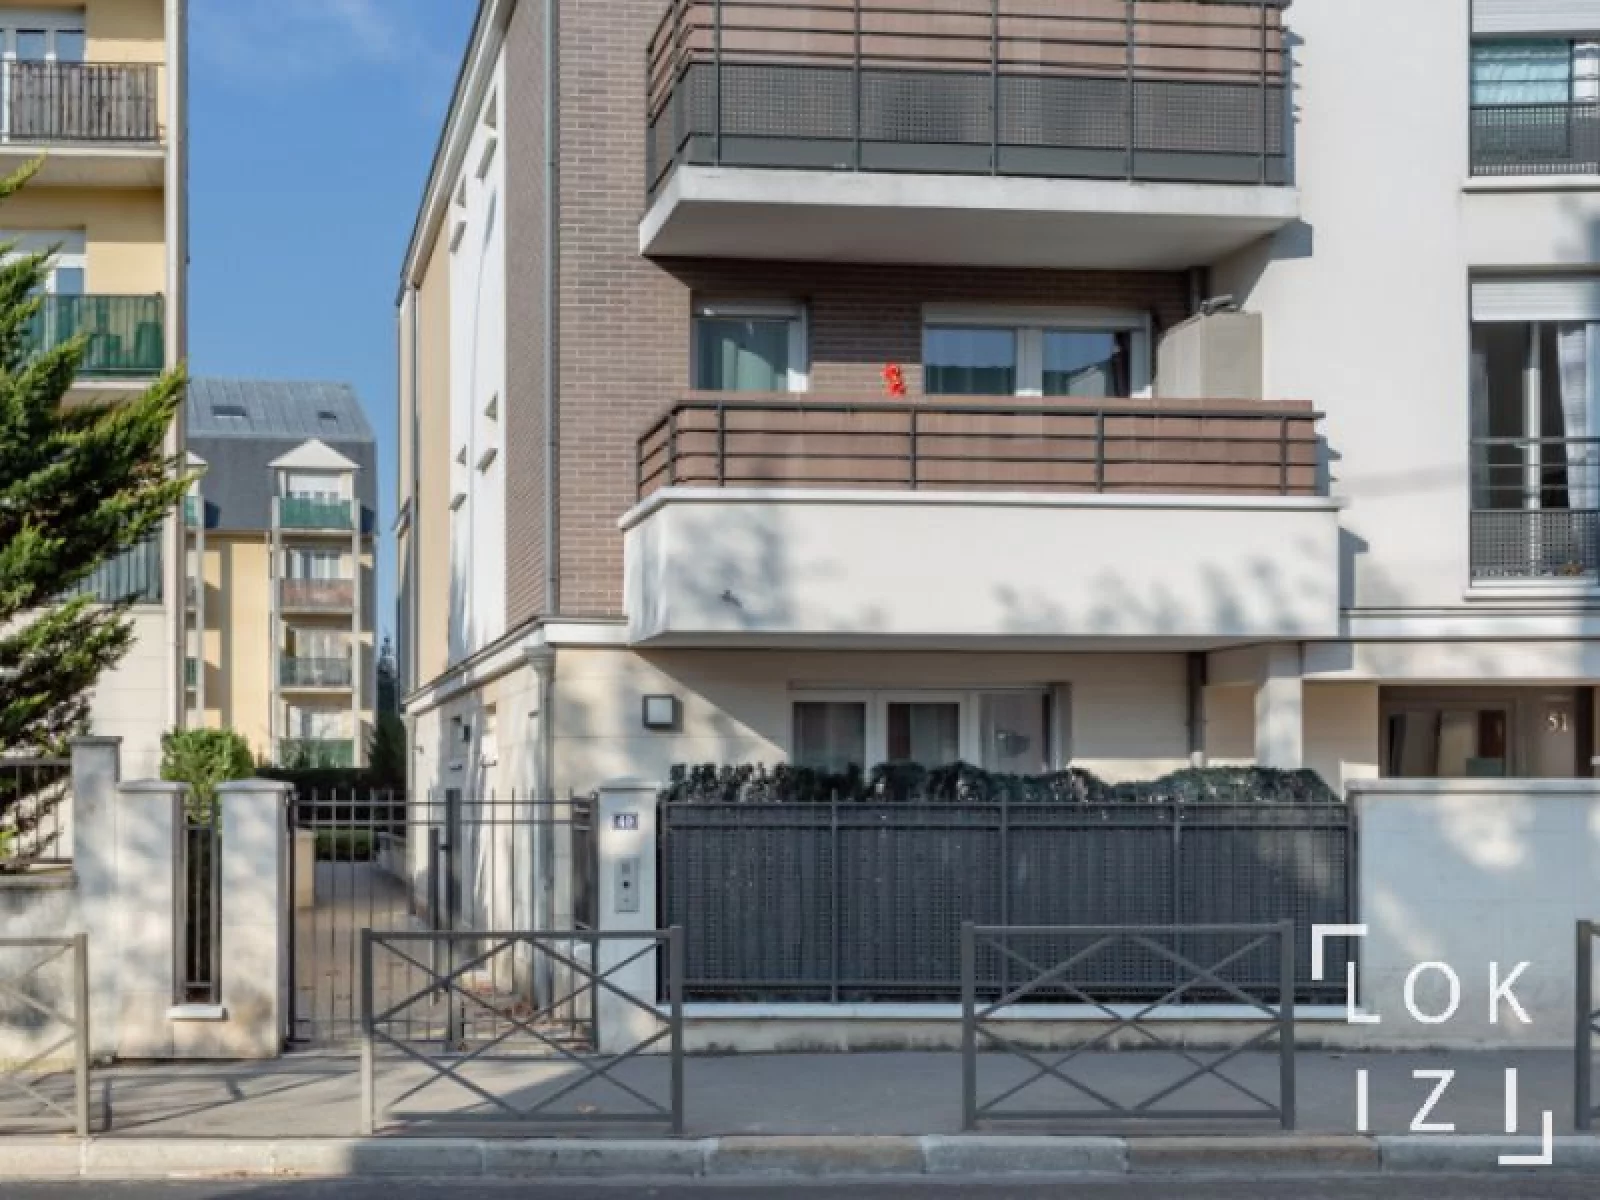  Vente appartement meublé 3 pièces 64m² avec terrasse (Paris - Rosny s/ Bois 93)